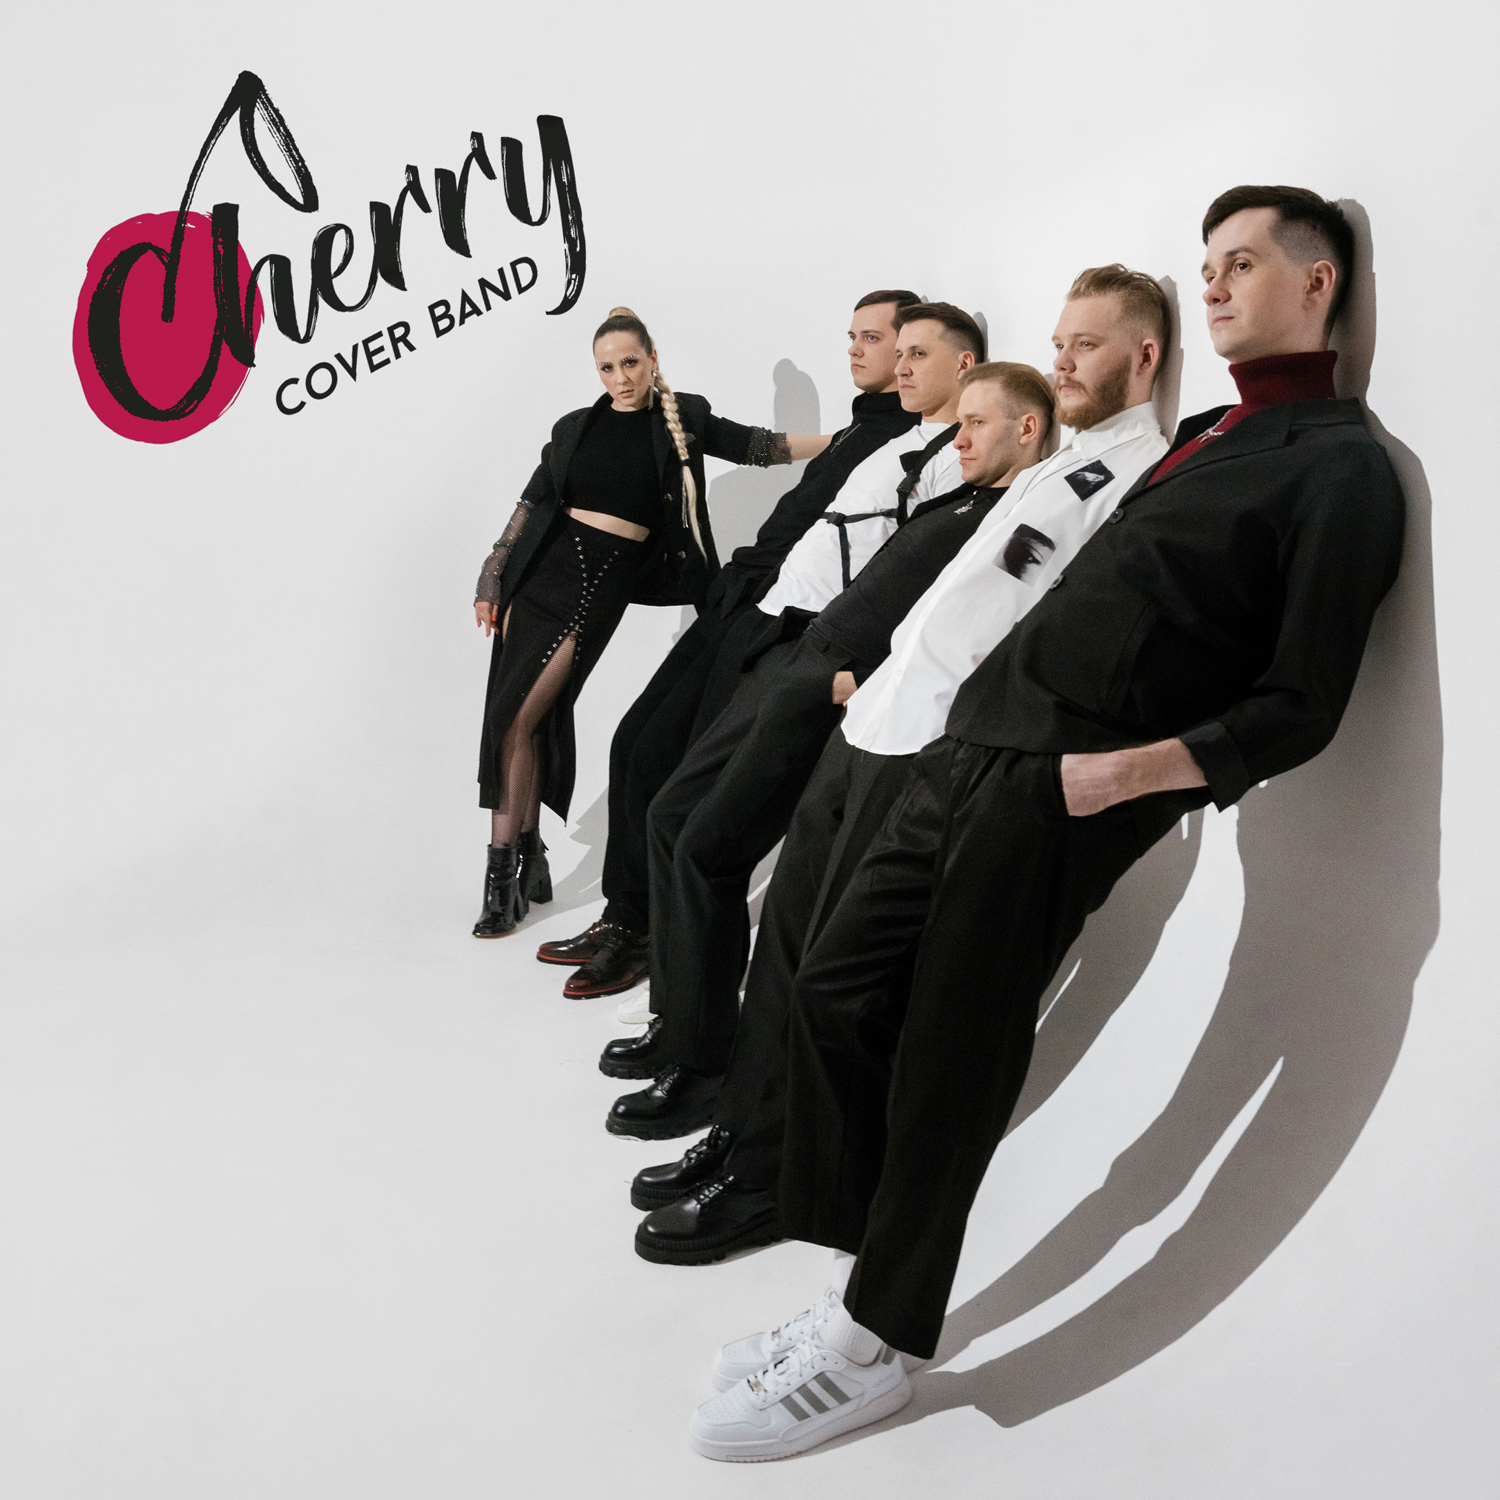 Cherry Band (ex ВИНОвные)